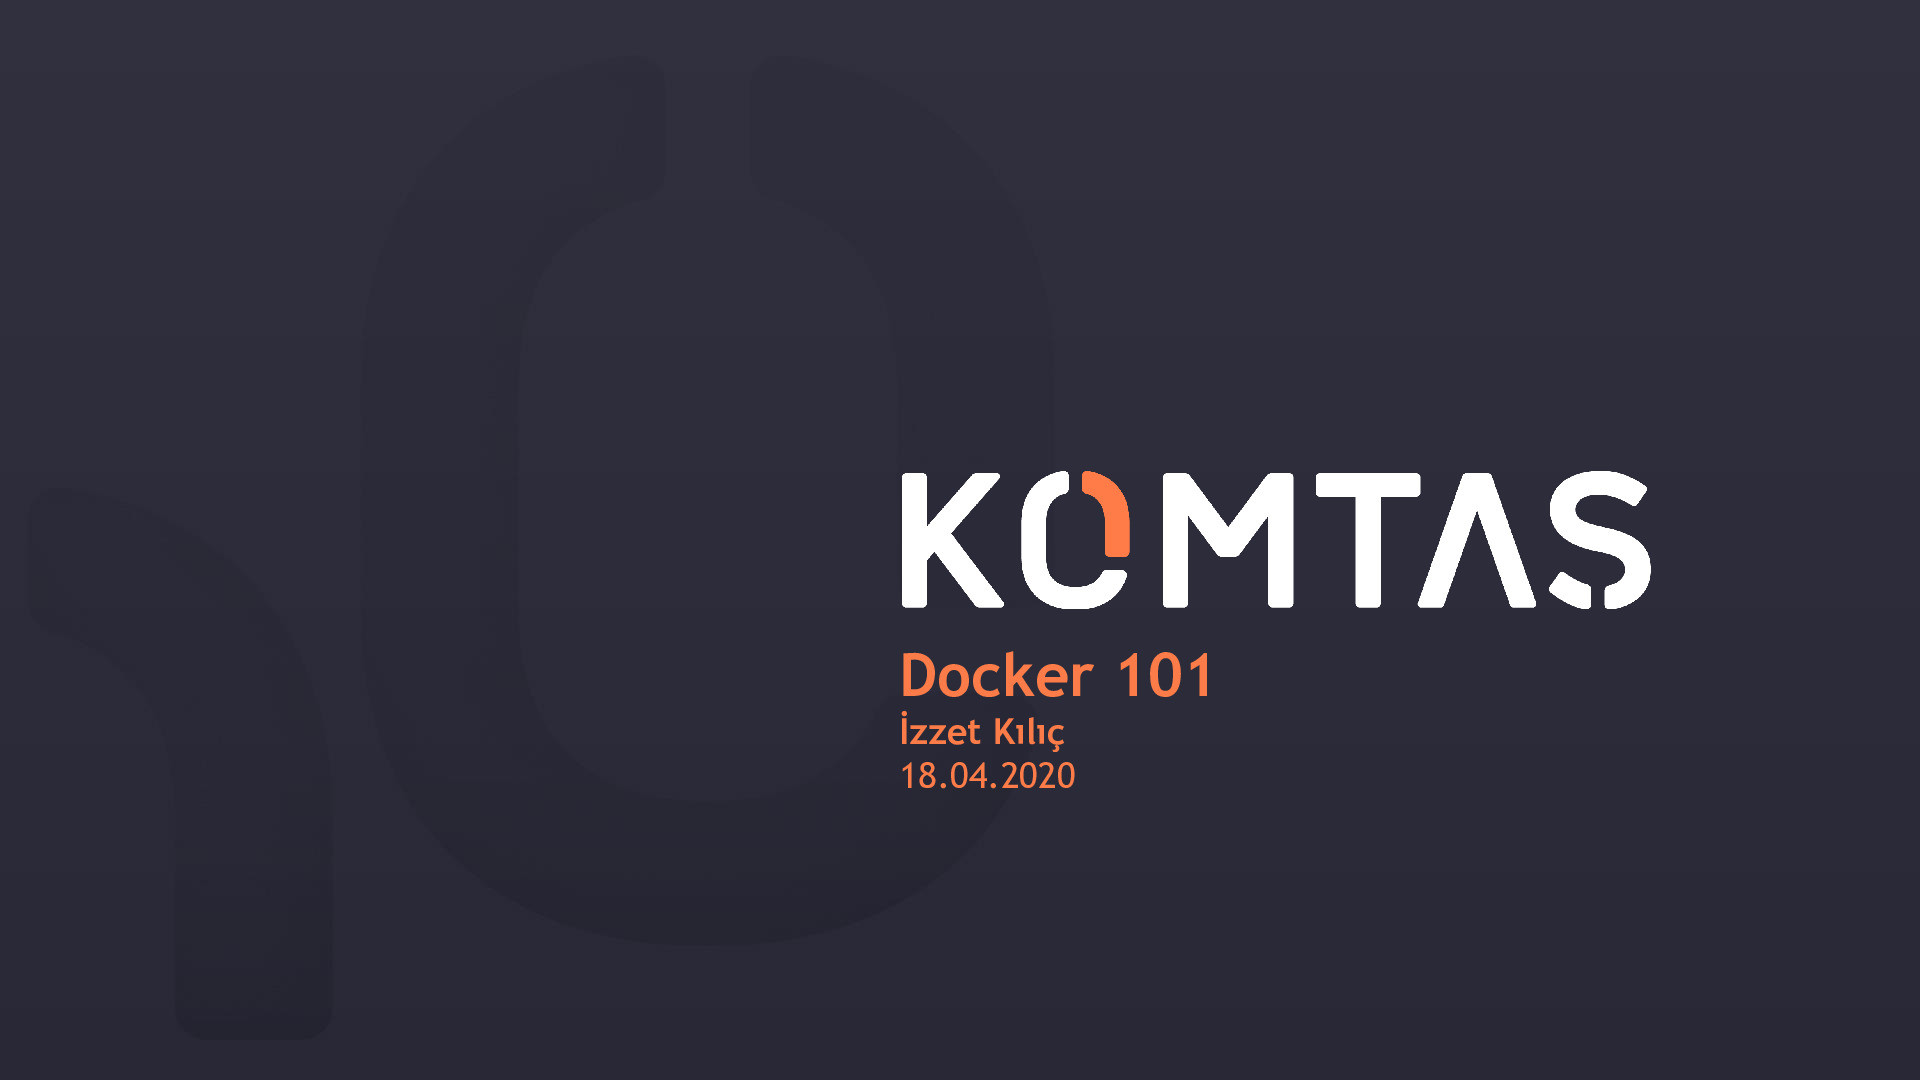 Docker 101 - Docker'a Giriş